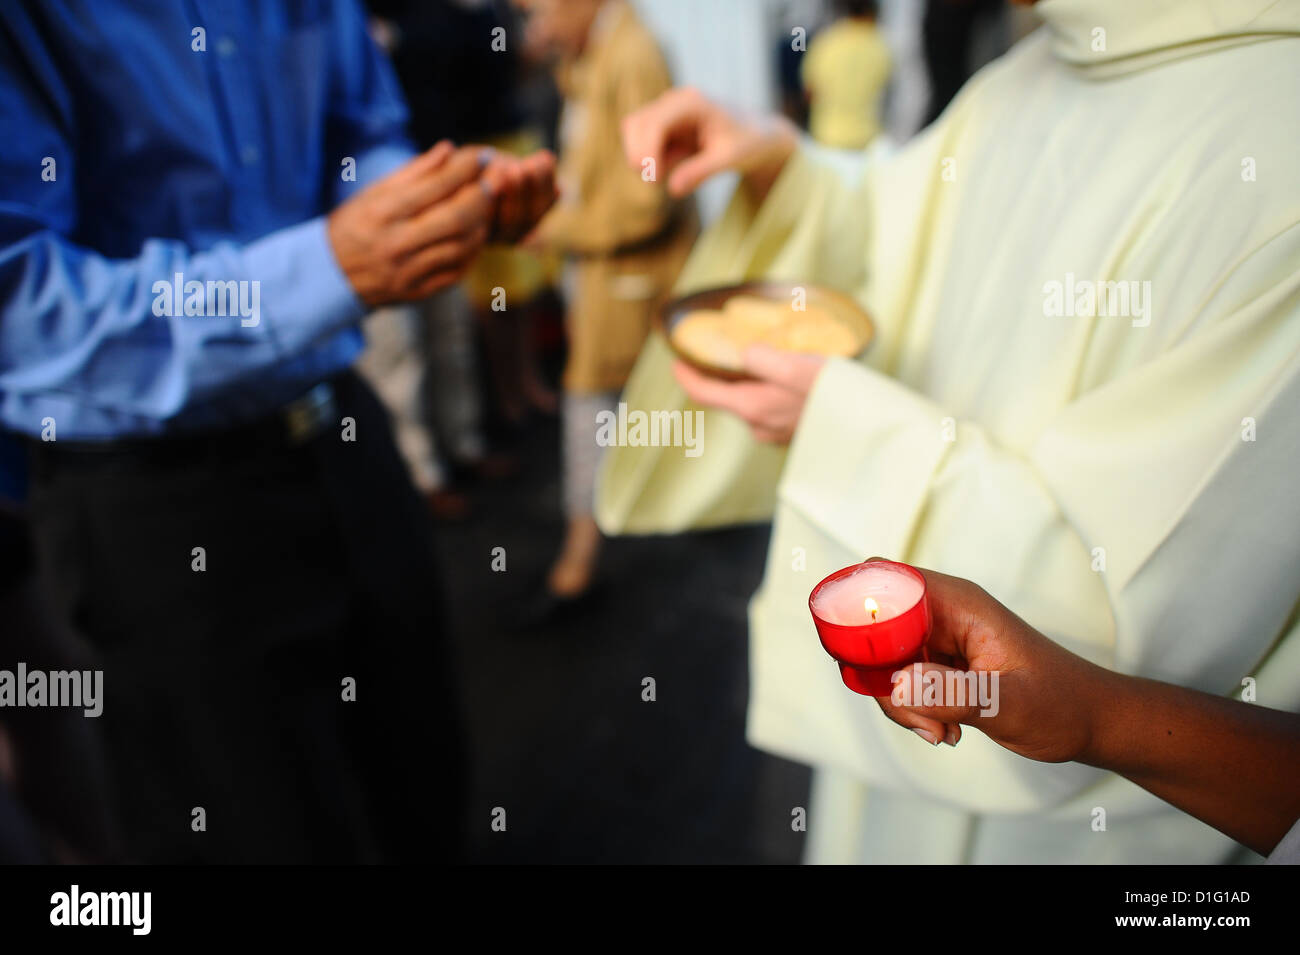 Prêtre catholique de donner la Sainte Communion, Paris, France, Europe Banque D'Images